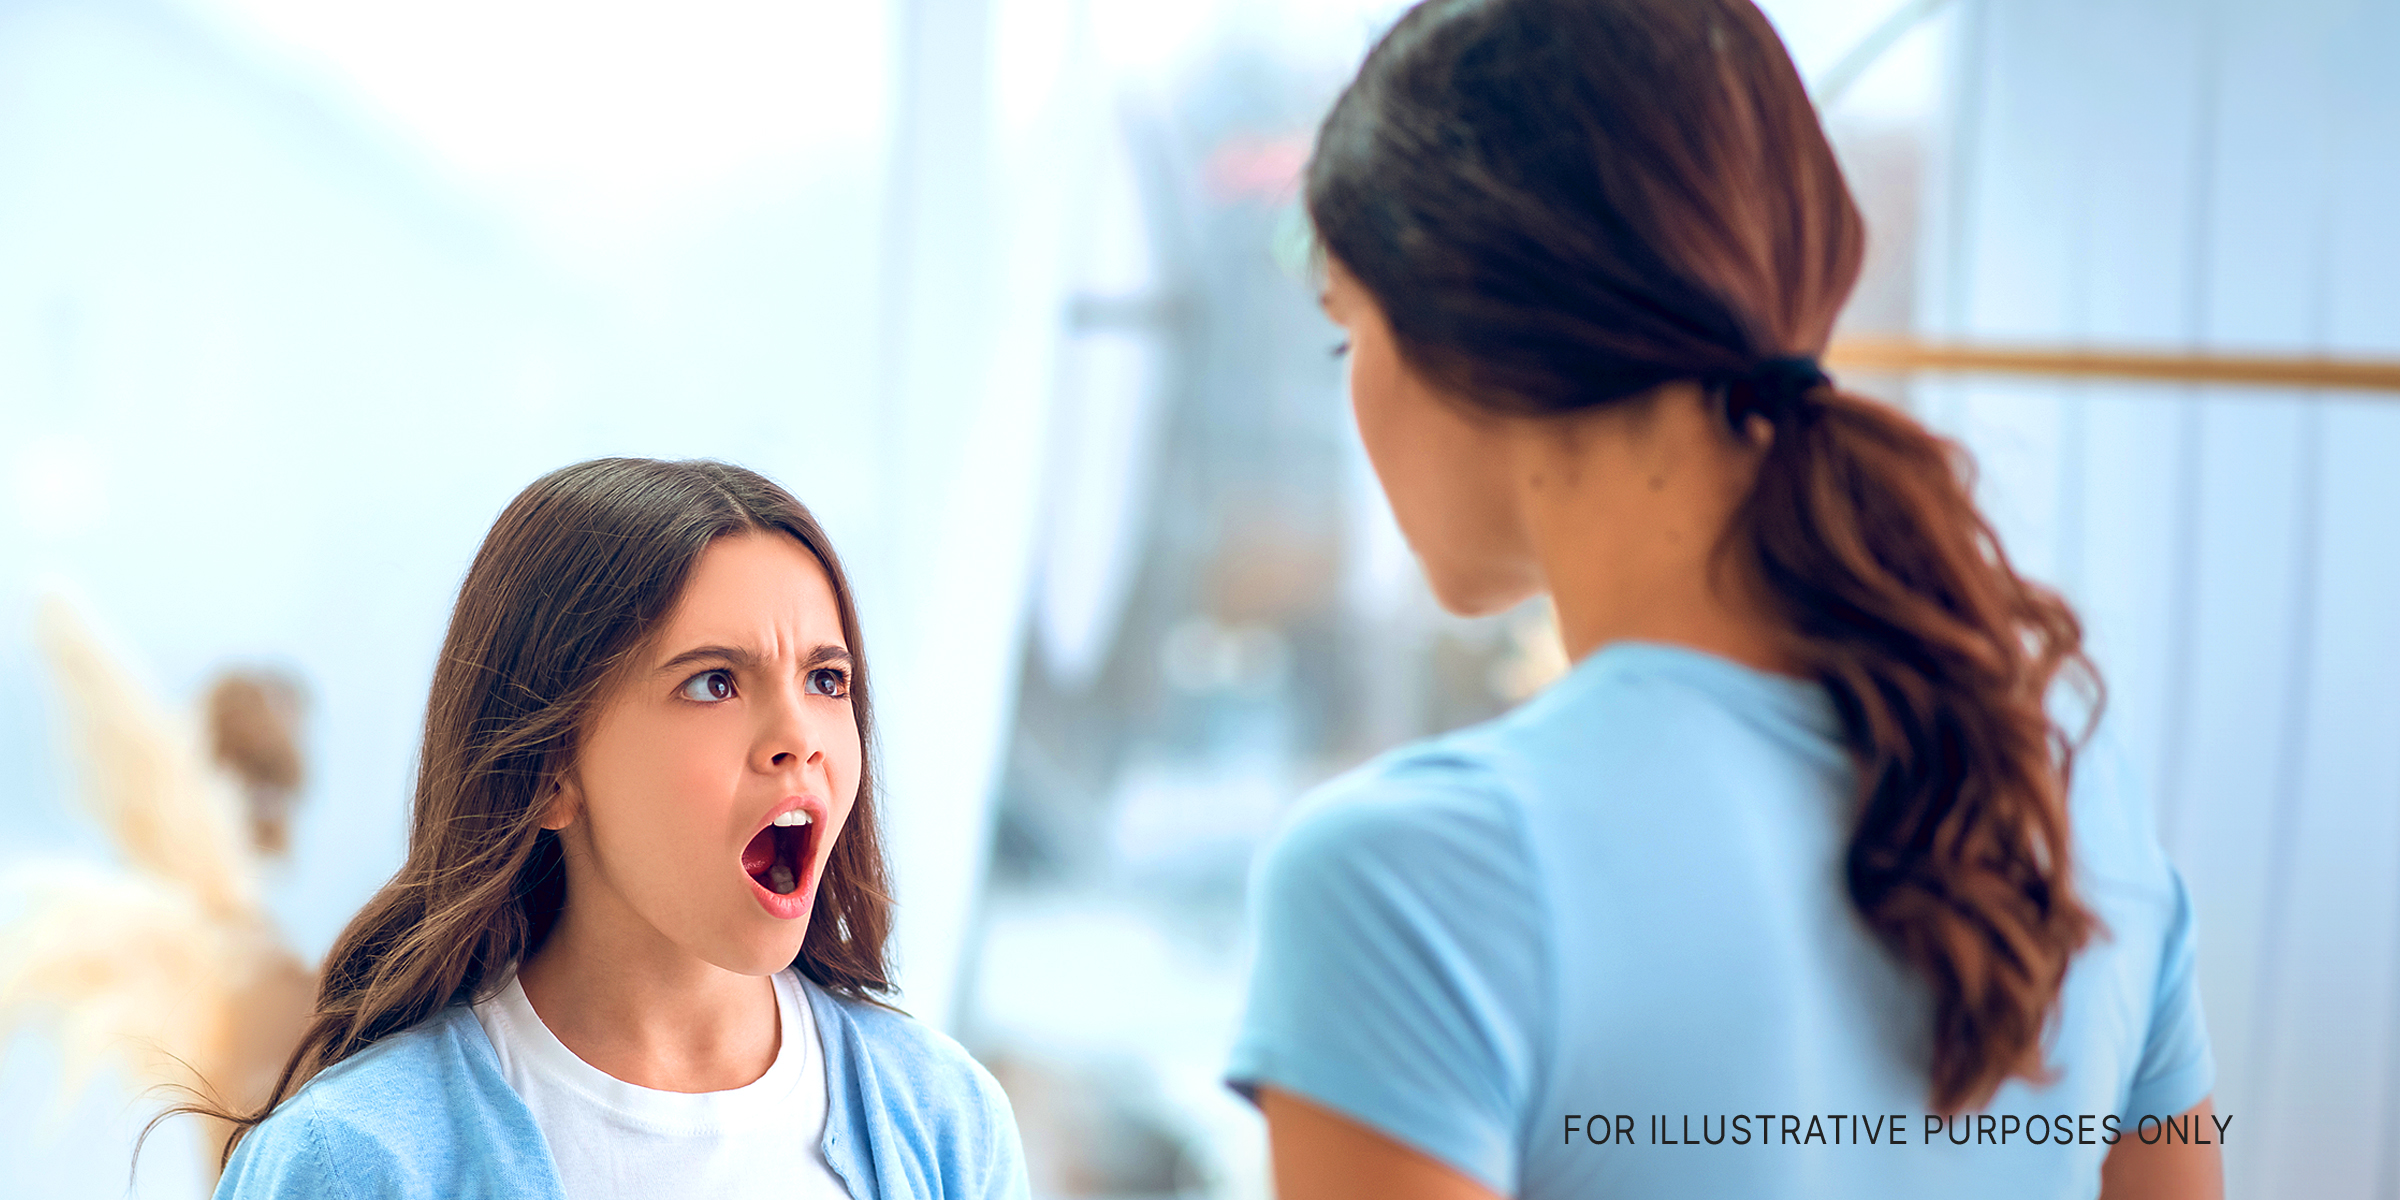 Une adolescente est vue en train de crier sur la femme qui se tient devant elle | Source : Shutterstock